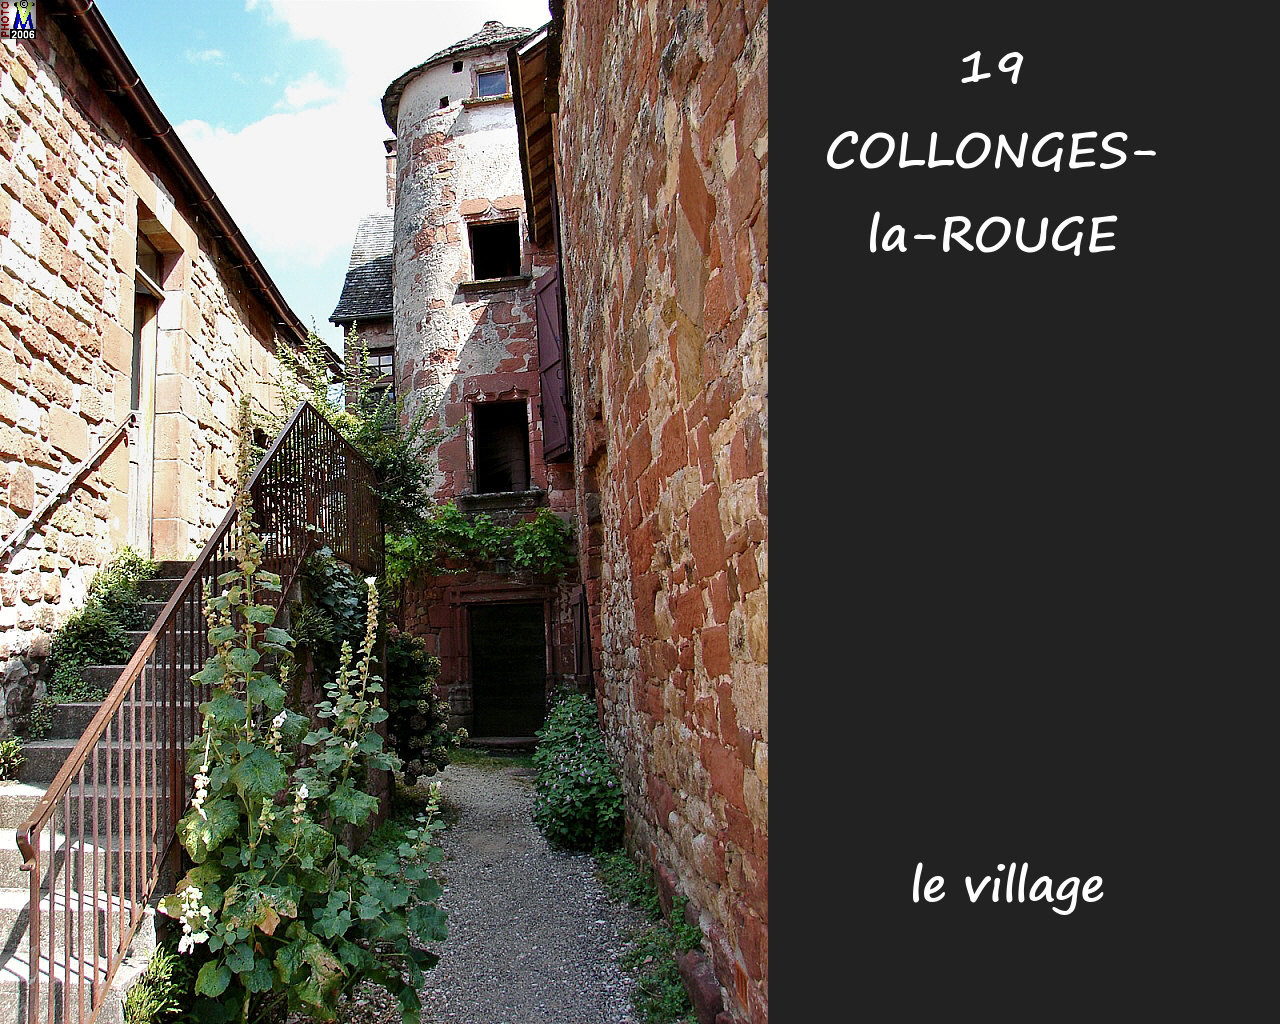 19COLLONGES-ROUGE_village_144.jpg